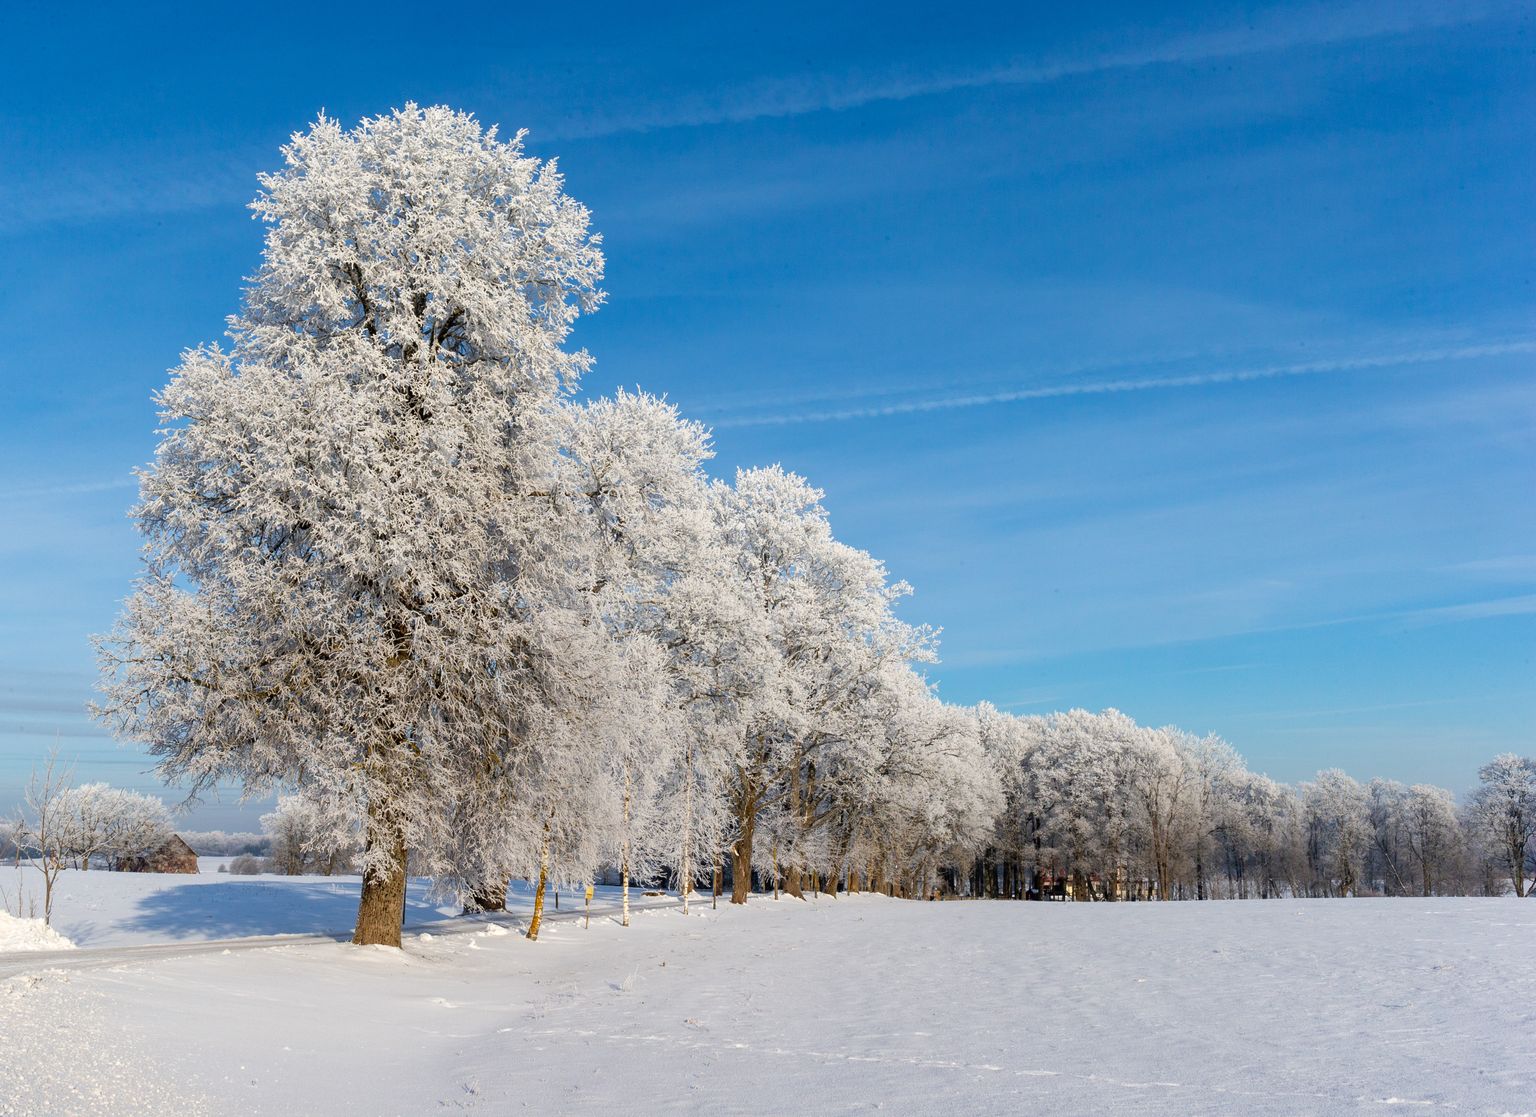 Härmas puud joonistavad talvises looduses maalilisi pilte.